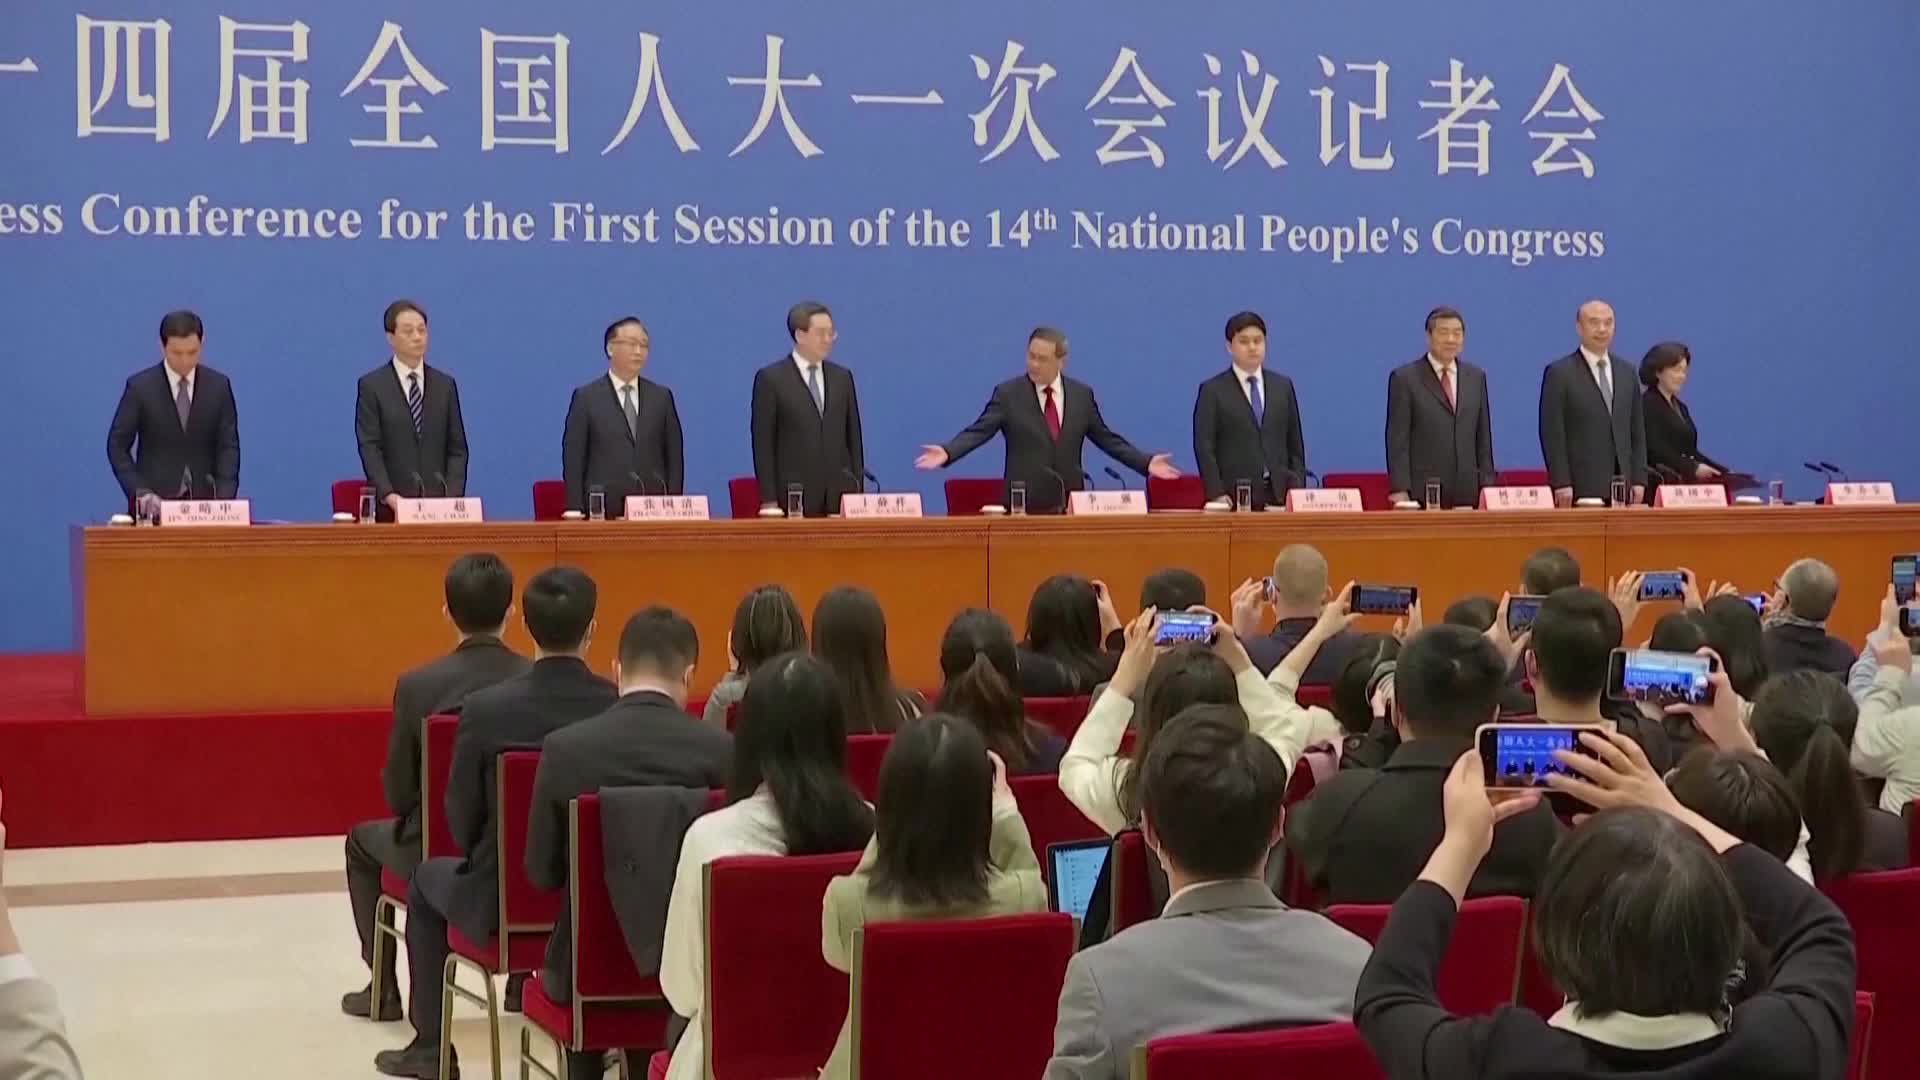 중국 리창 신임 총리(가운데)가 13일 전인대 폐막식 직후 열린 내외신 기자회견에서 양손을 들어 자리에 착석하라고 권유하고 있다.(사진: 로이터TV 캡처)